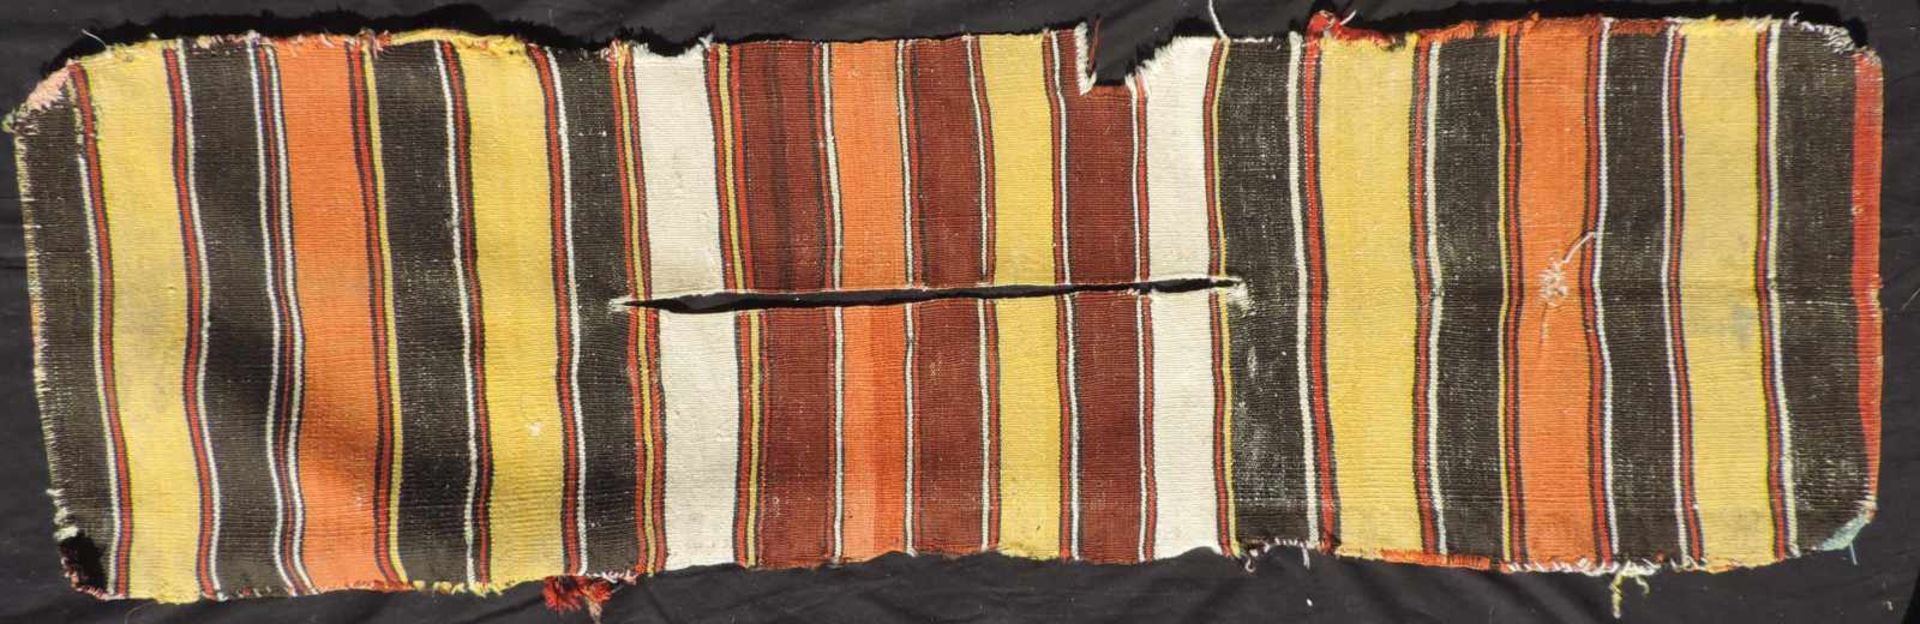 Bergama Hybe Stammesteppich. Doppeltasche. Türkei. Antik, 19. Jh. 140 cm x 44 cm. Handgeknüpfte - Bild 6 aus 6